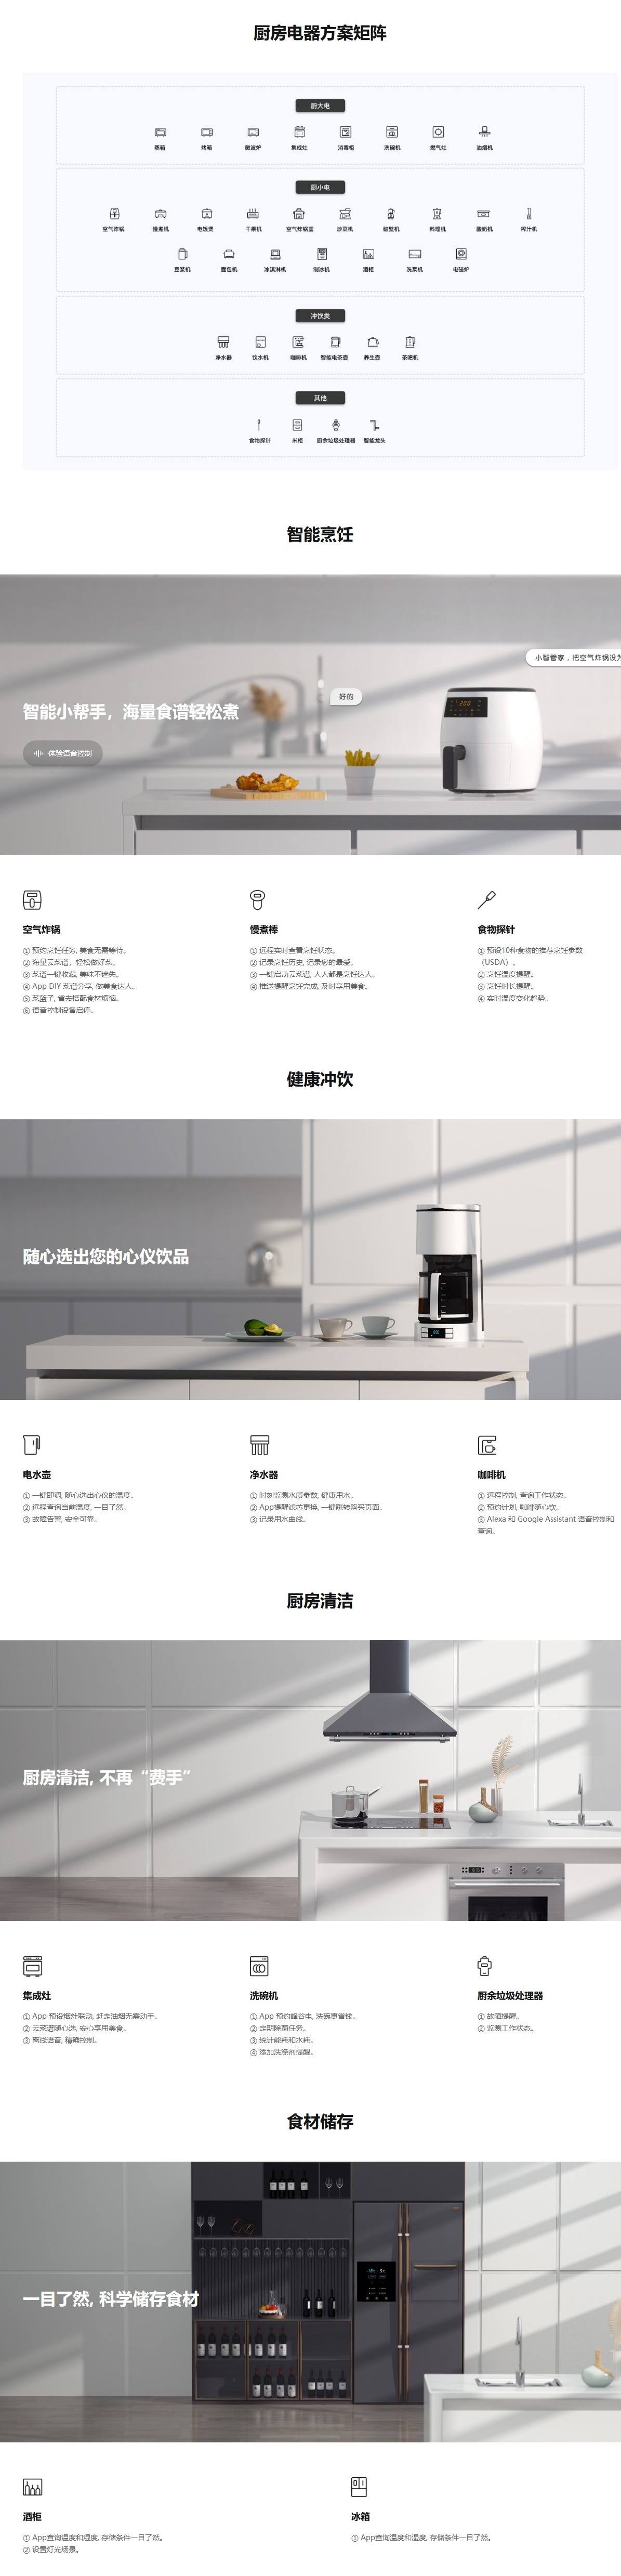 智能廚房電器解決方案 _ 智能廚房電器方案設計 - 涂鴉智能_看圖王(1).jpg